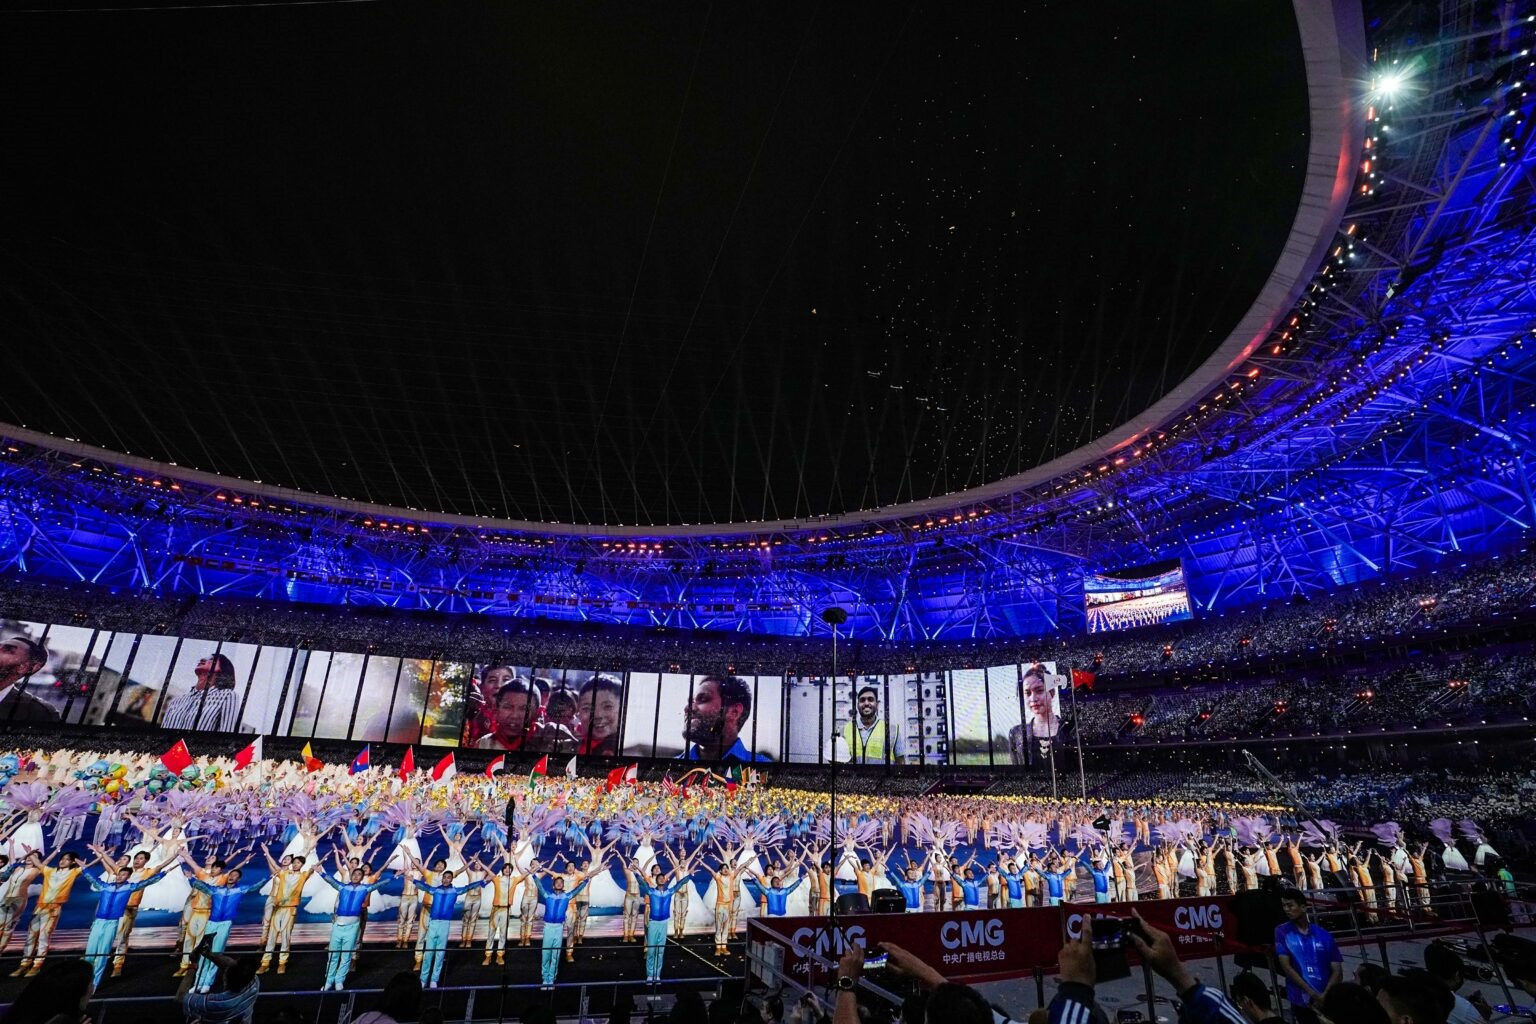 Sự kiện thể thao này cũng là dịp Bắc Kinh giới thiệu nhiều ứng dụng, sản phẩm công nghệ cao với thế giới. Ảnh: PTI